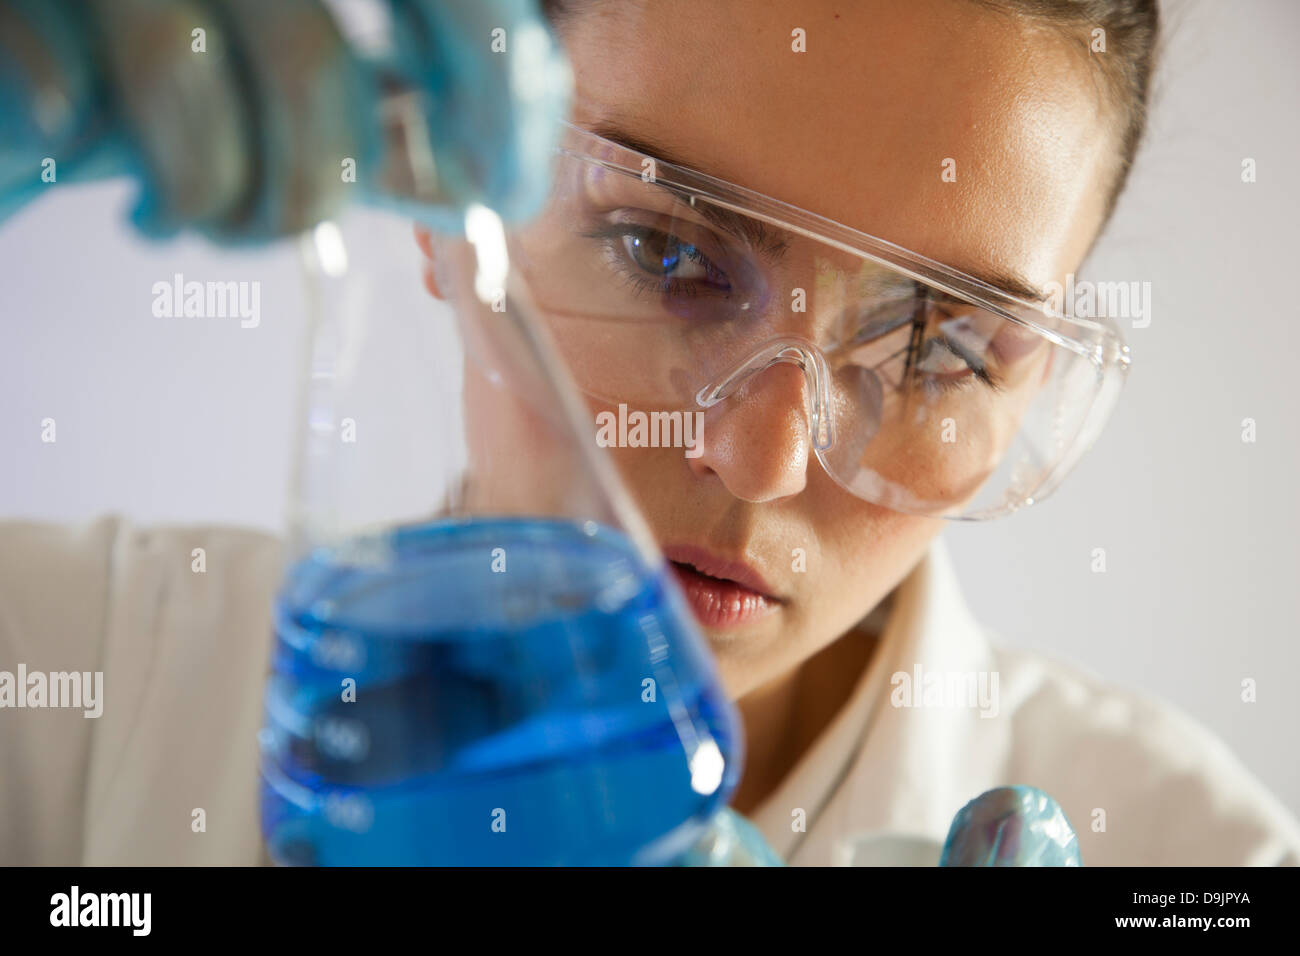 Técnico de laboratorio o científico femenino sosteniendo un vaso de precipitado de vidrio con líquido azul. Foto de stock